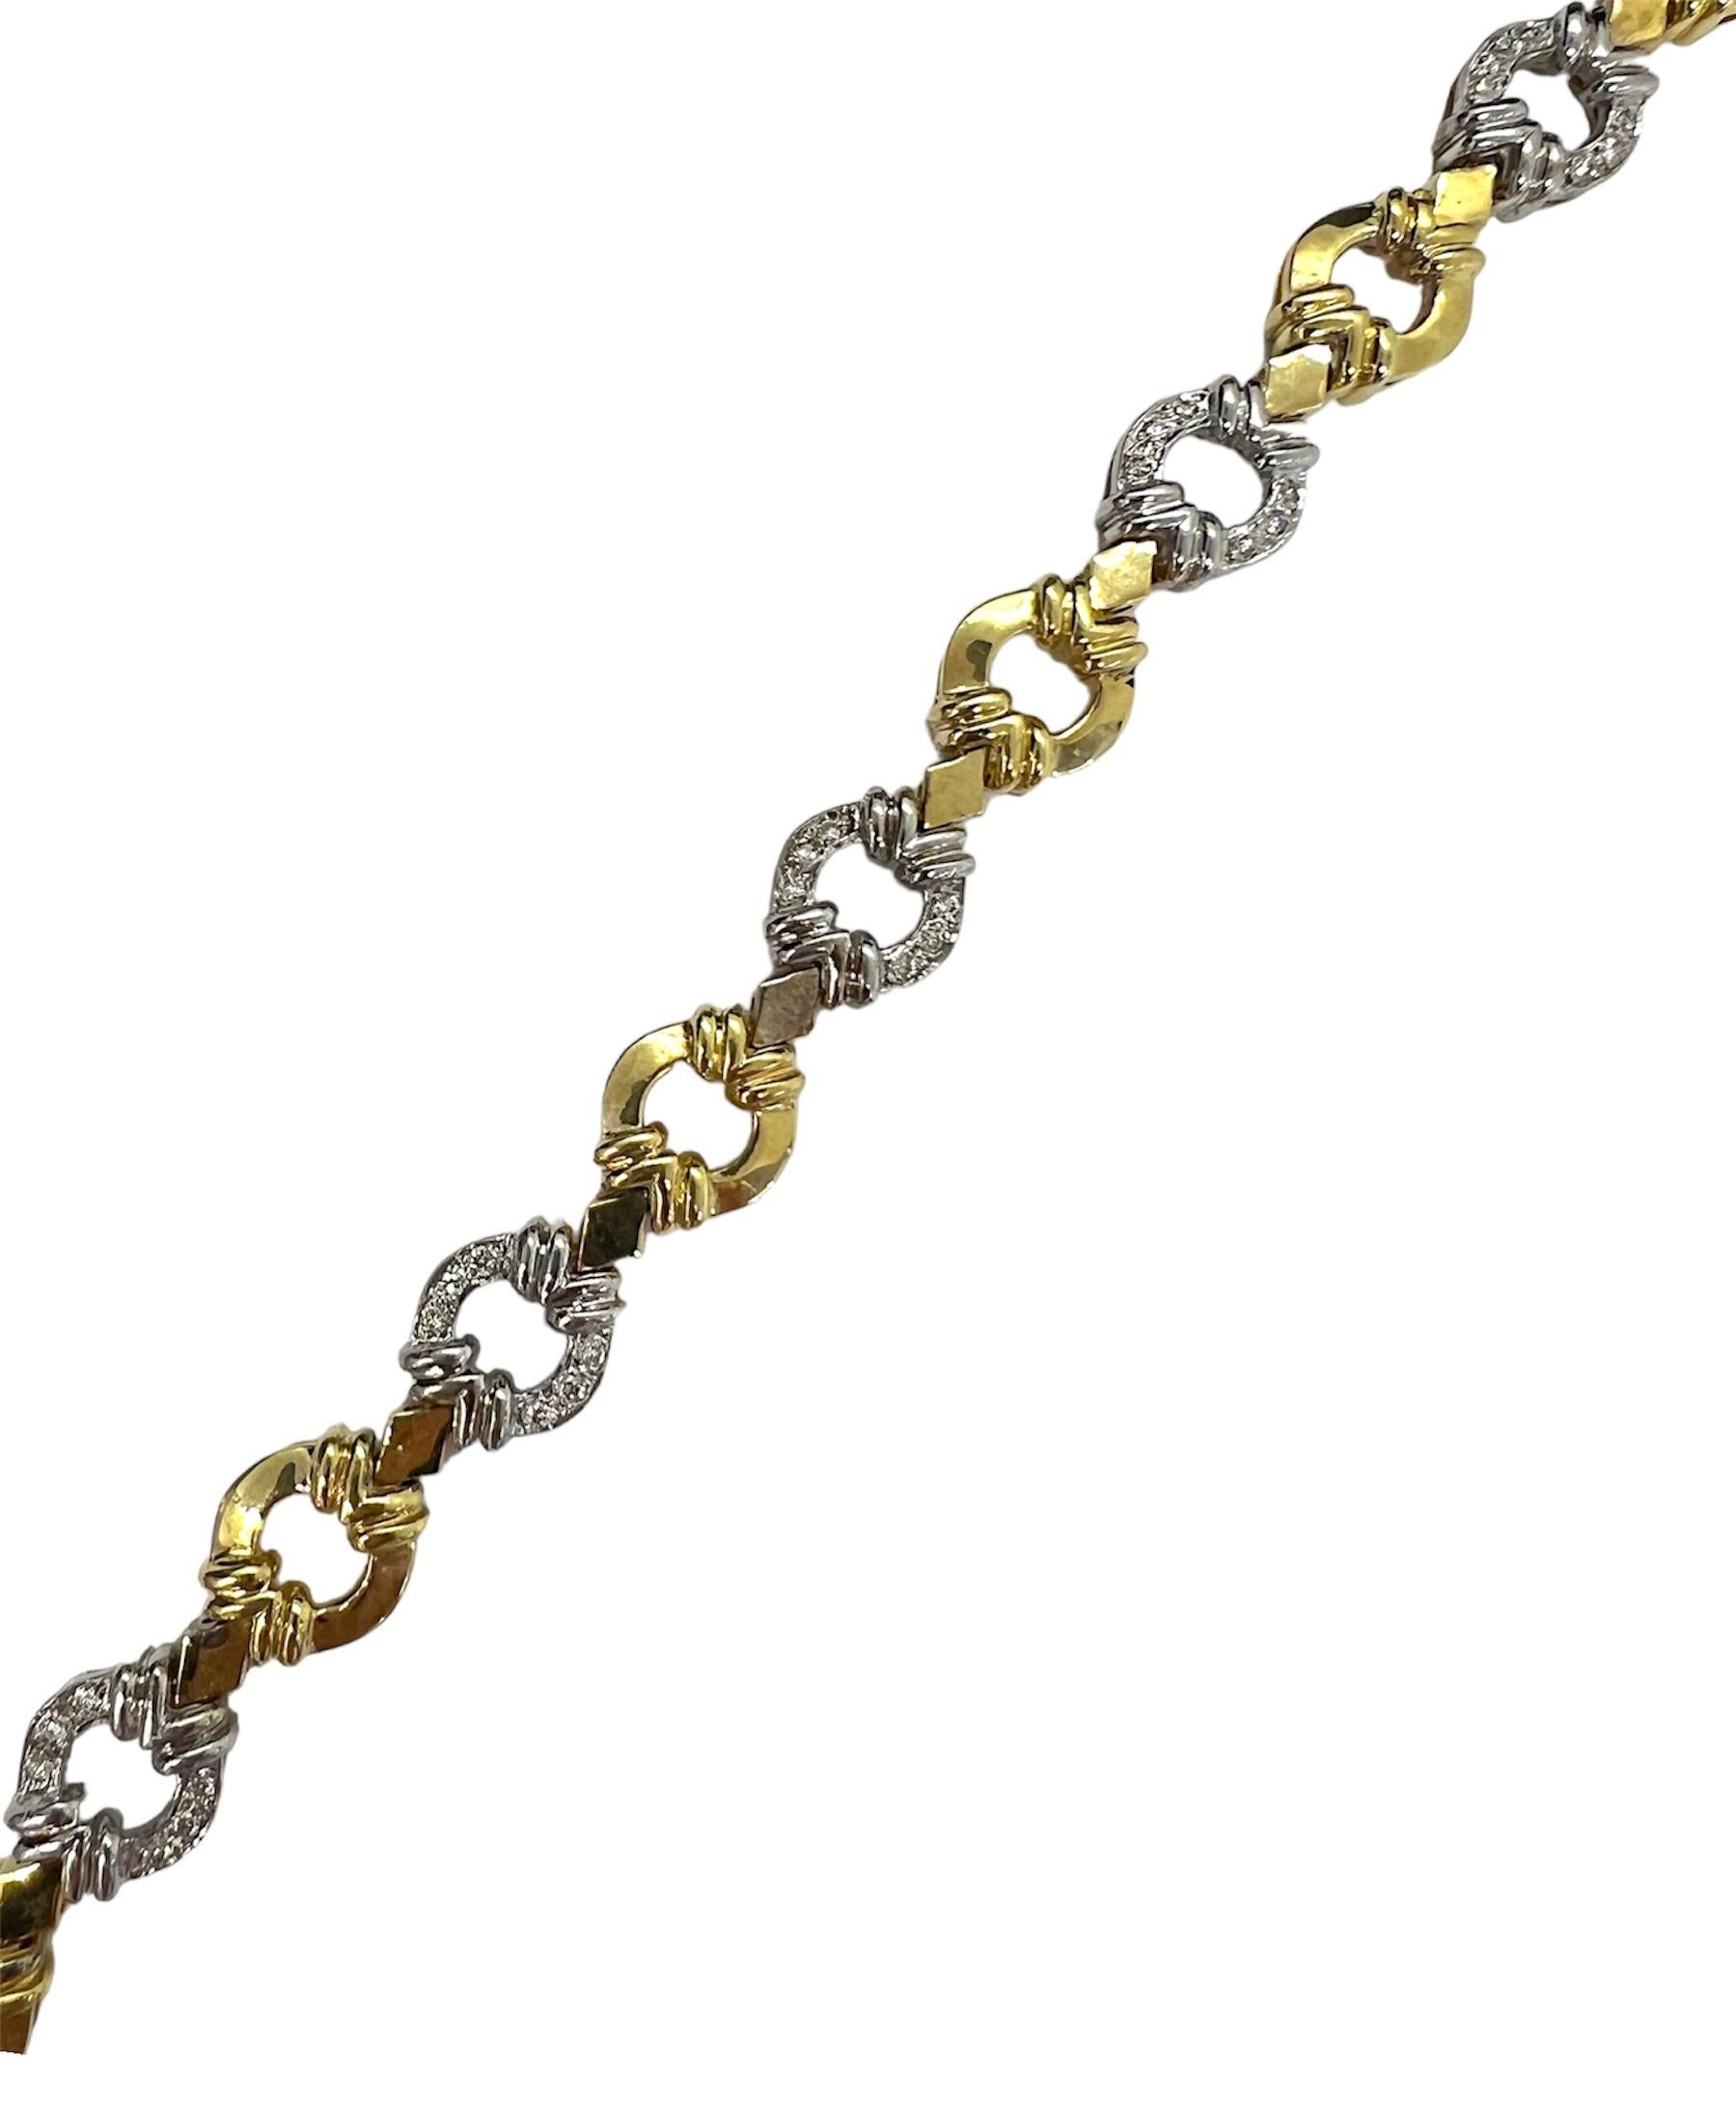 Bracelet en or jaune et en or blanc avec diamants.

Sophia D by Joseph Dardashti Ltd est connue dans le monde entier depuis 35 ans et s'inspire du design classique de l'Art déco qui fusionne avec les techniques de fabrication modernes.